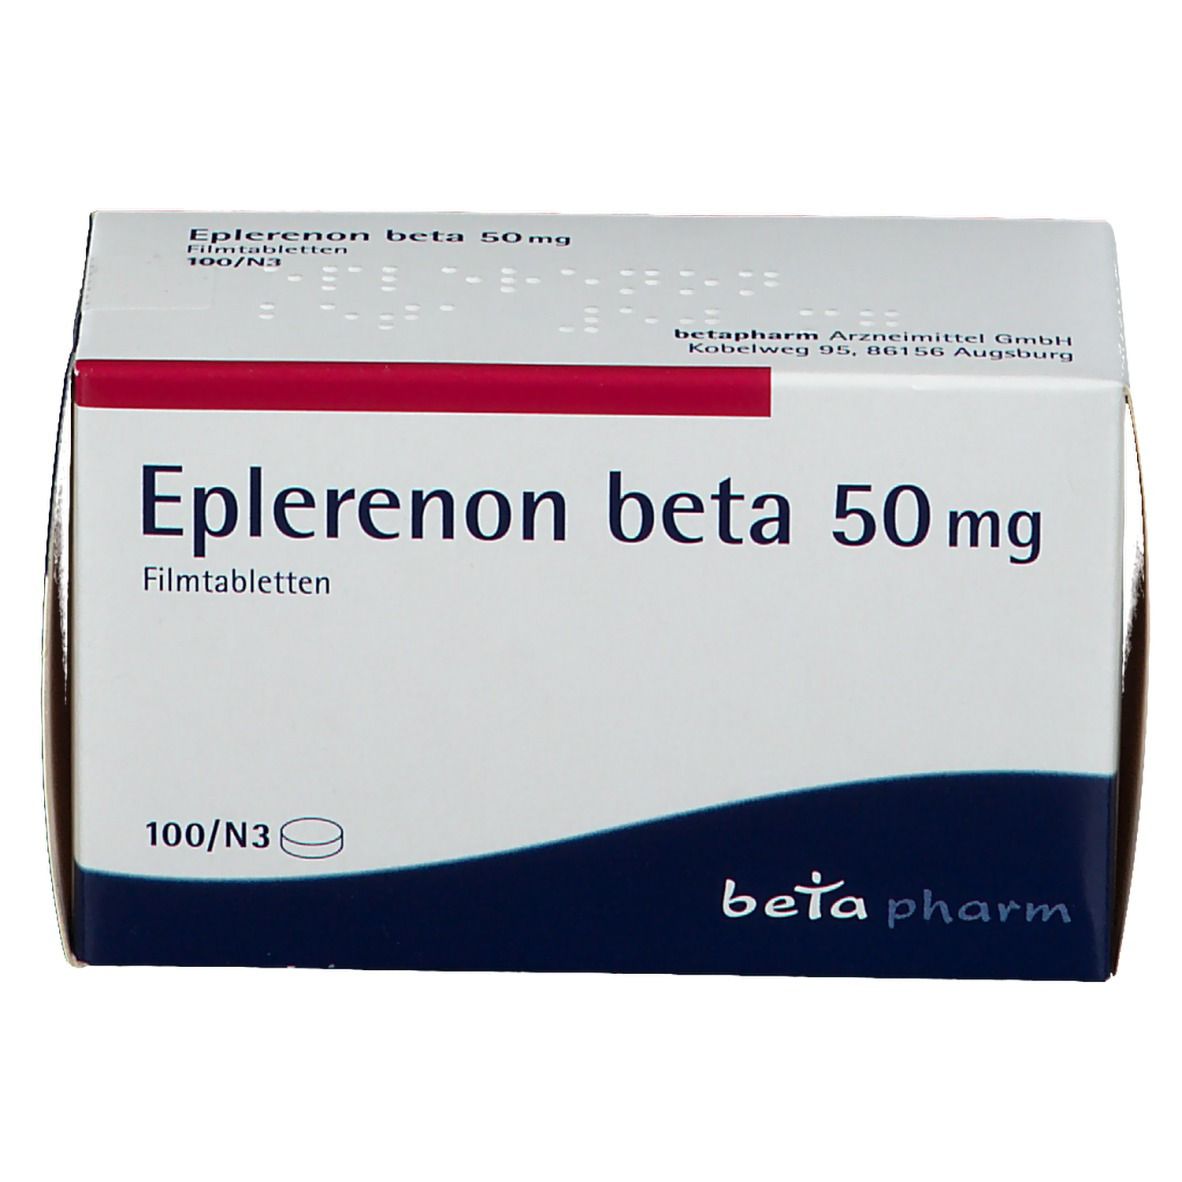 Eplerenon beta 50 mg